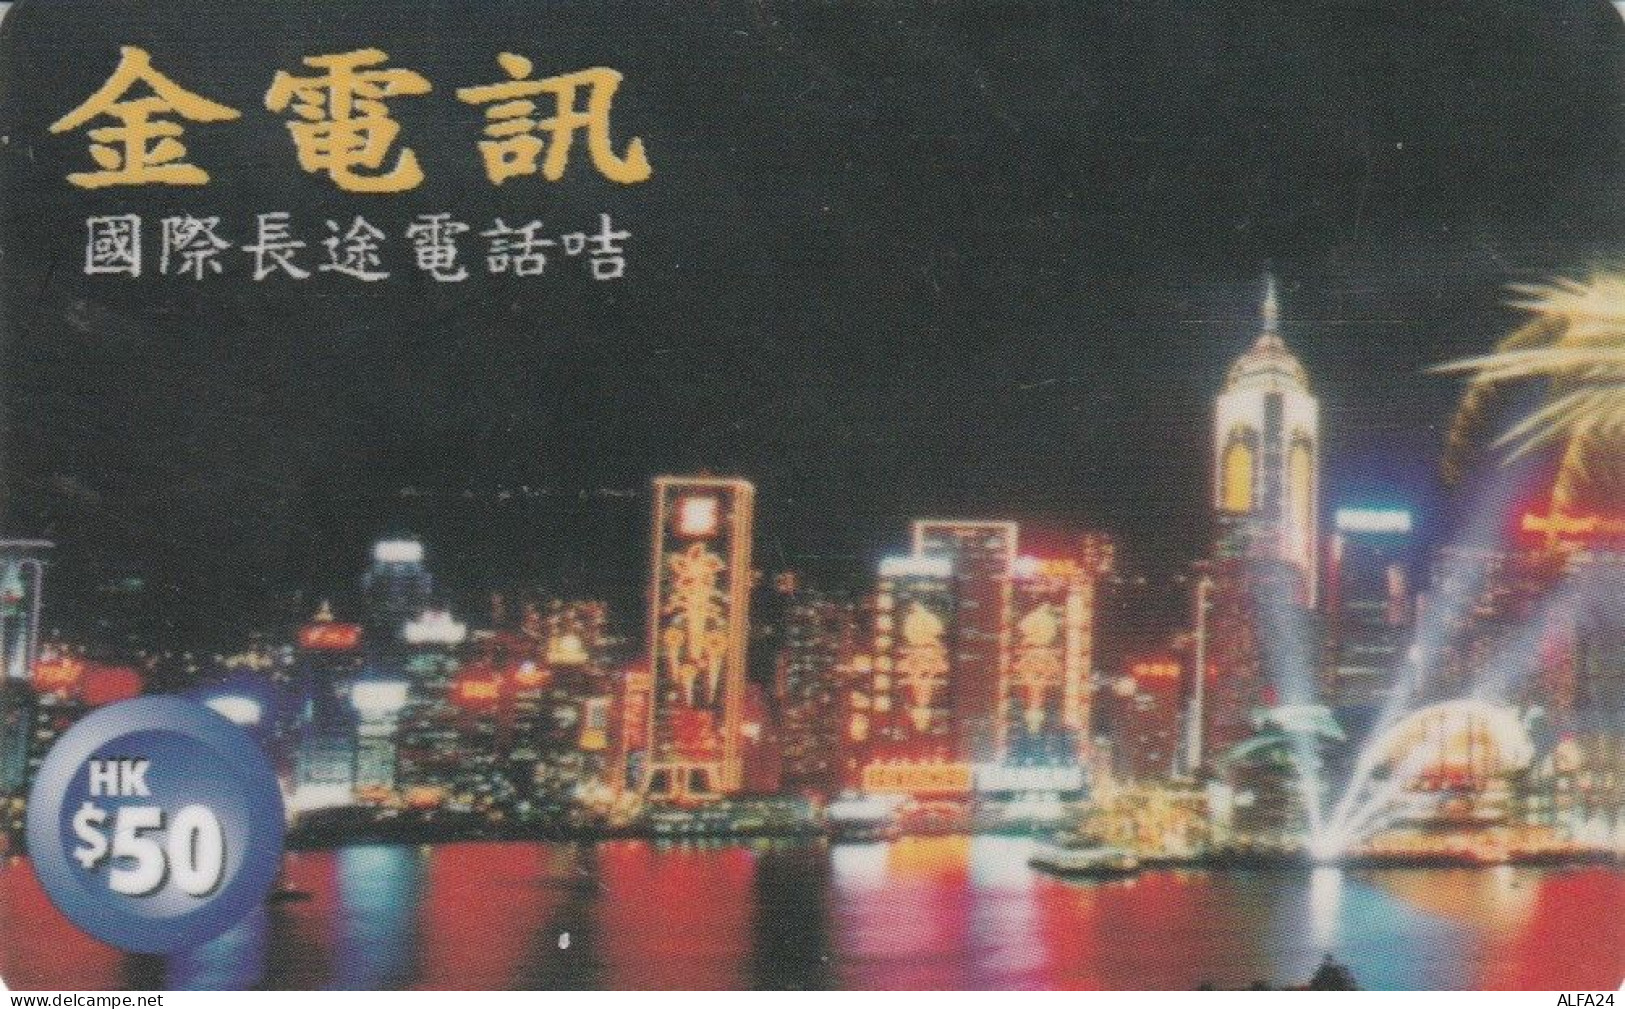 PREPAID PHONE CARD HONK KONG (CK2714 - Hong Kong